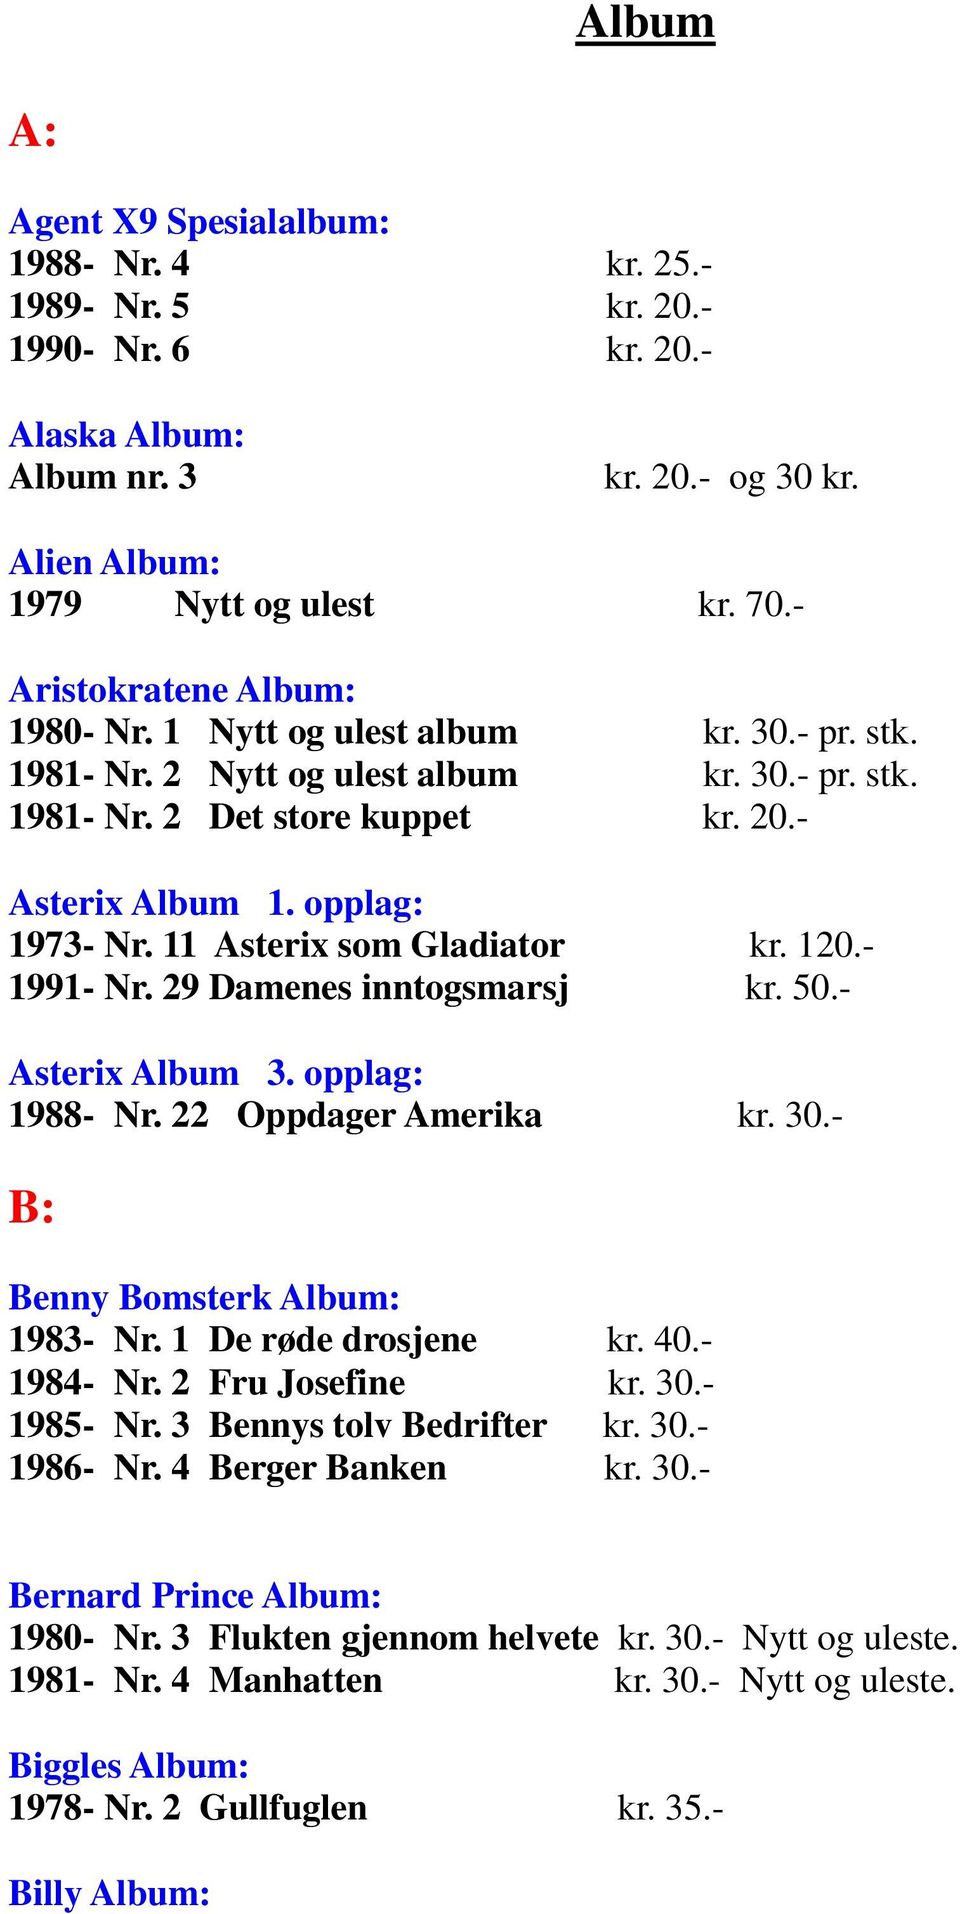 11 Asterix som Gladiator kr. 120.- 1991- Nr. 29 Damenes inntogsmarsj kr. 50.- Asterix Album 3. opplag: 1988- Nr. 22 Oppdager Amerika kr. 30.- B: Benny Bomsterk Album: 1983- Nr. 1 De røde drosjene kr.